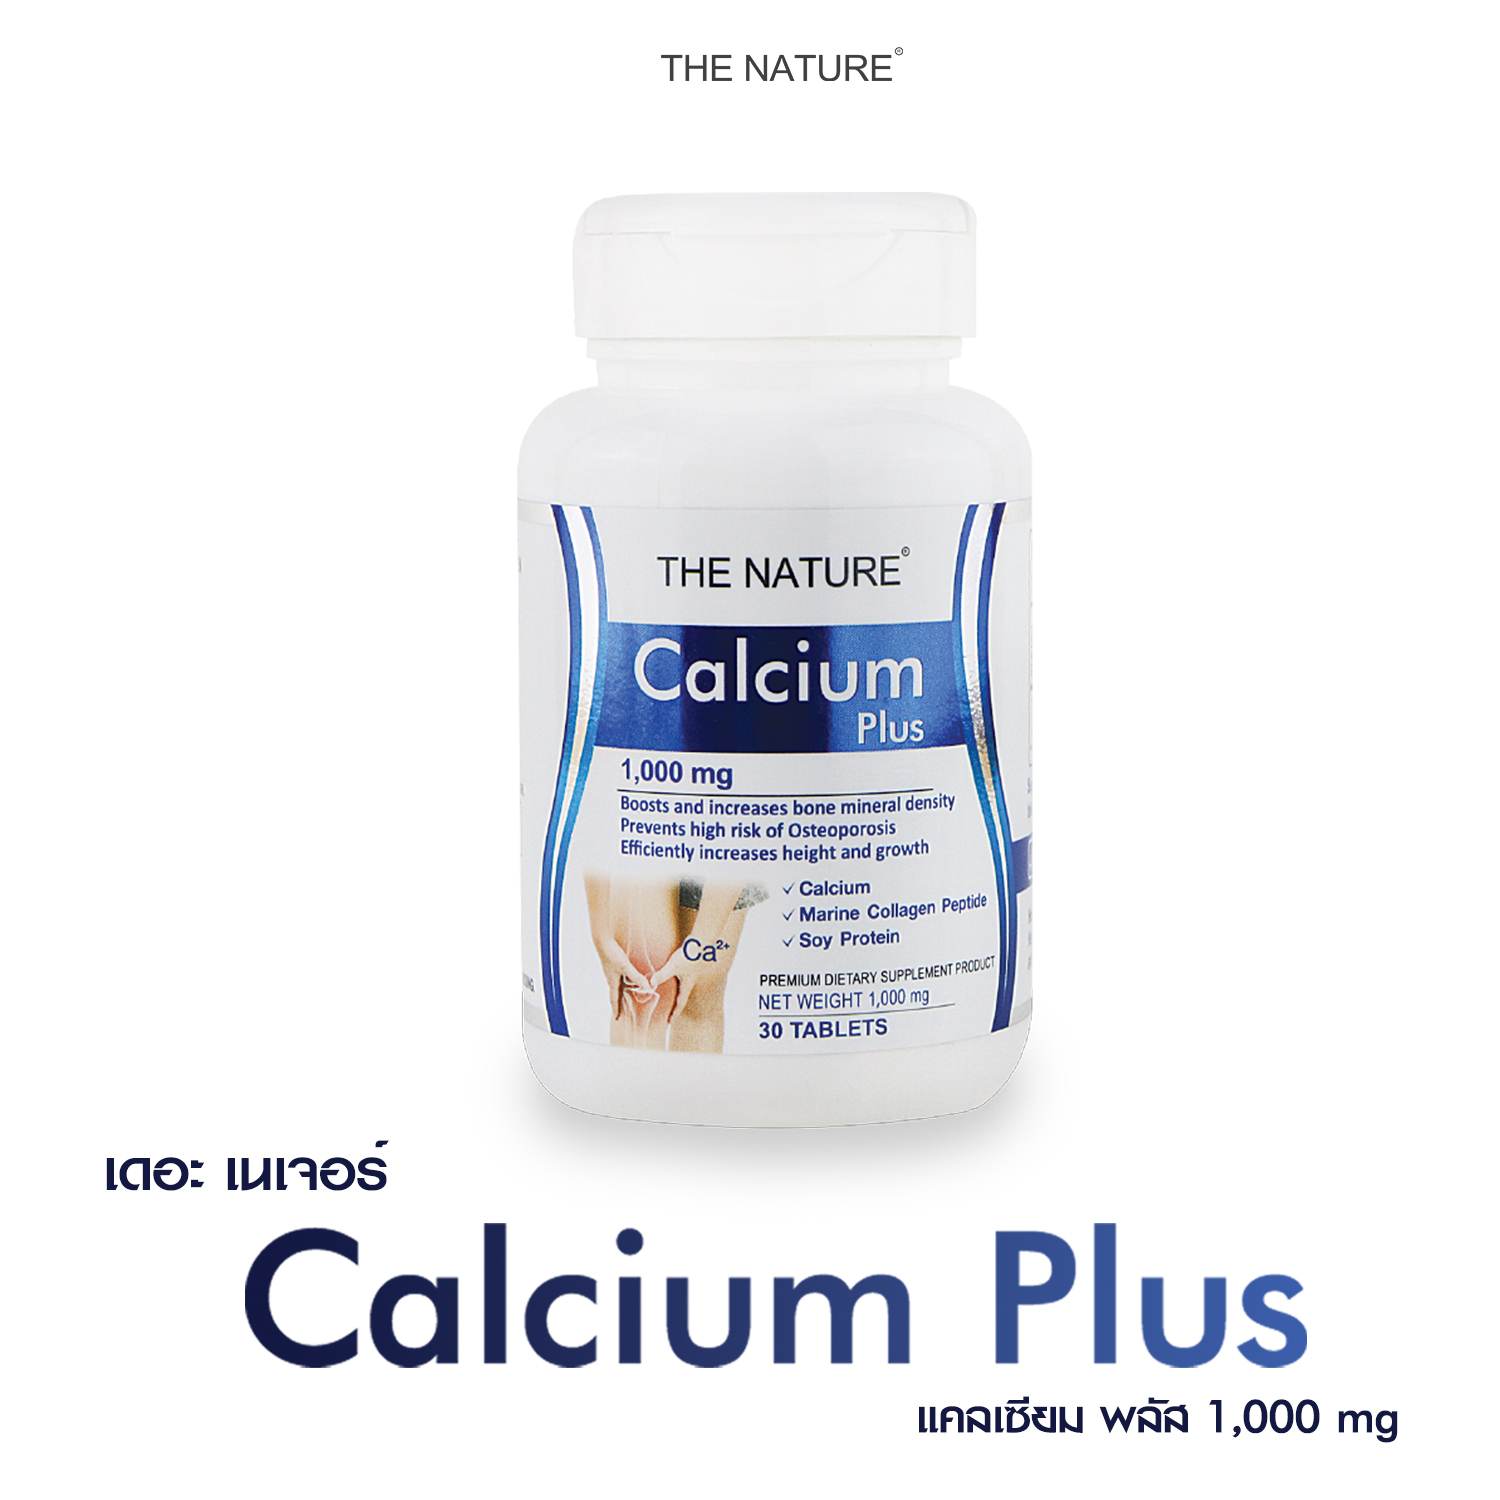 แคลเซียม พลัส  x 1 ขวด สินค้าขายดี แคลเซียม พลัส คอลลาเจน เปปไทด์ ซอยโปรตีน เดอะ เนเจอร์ Calcium Plus  THE NATURE Calcium Plus Collagen peptide & Soy Protein